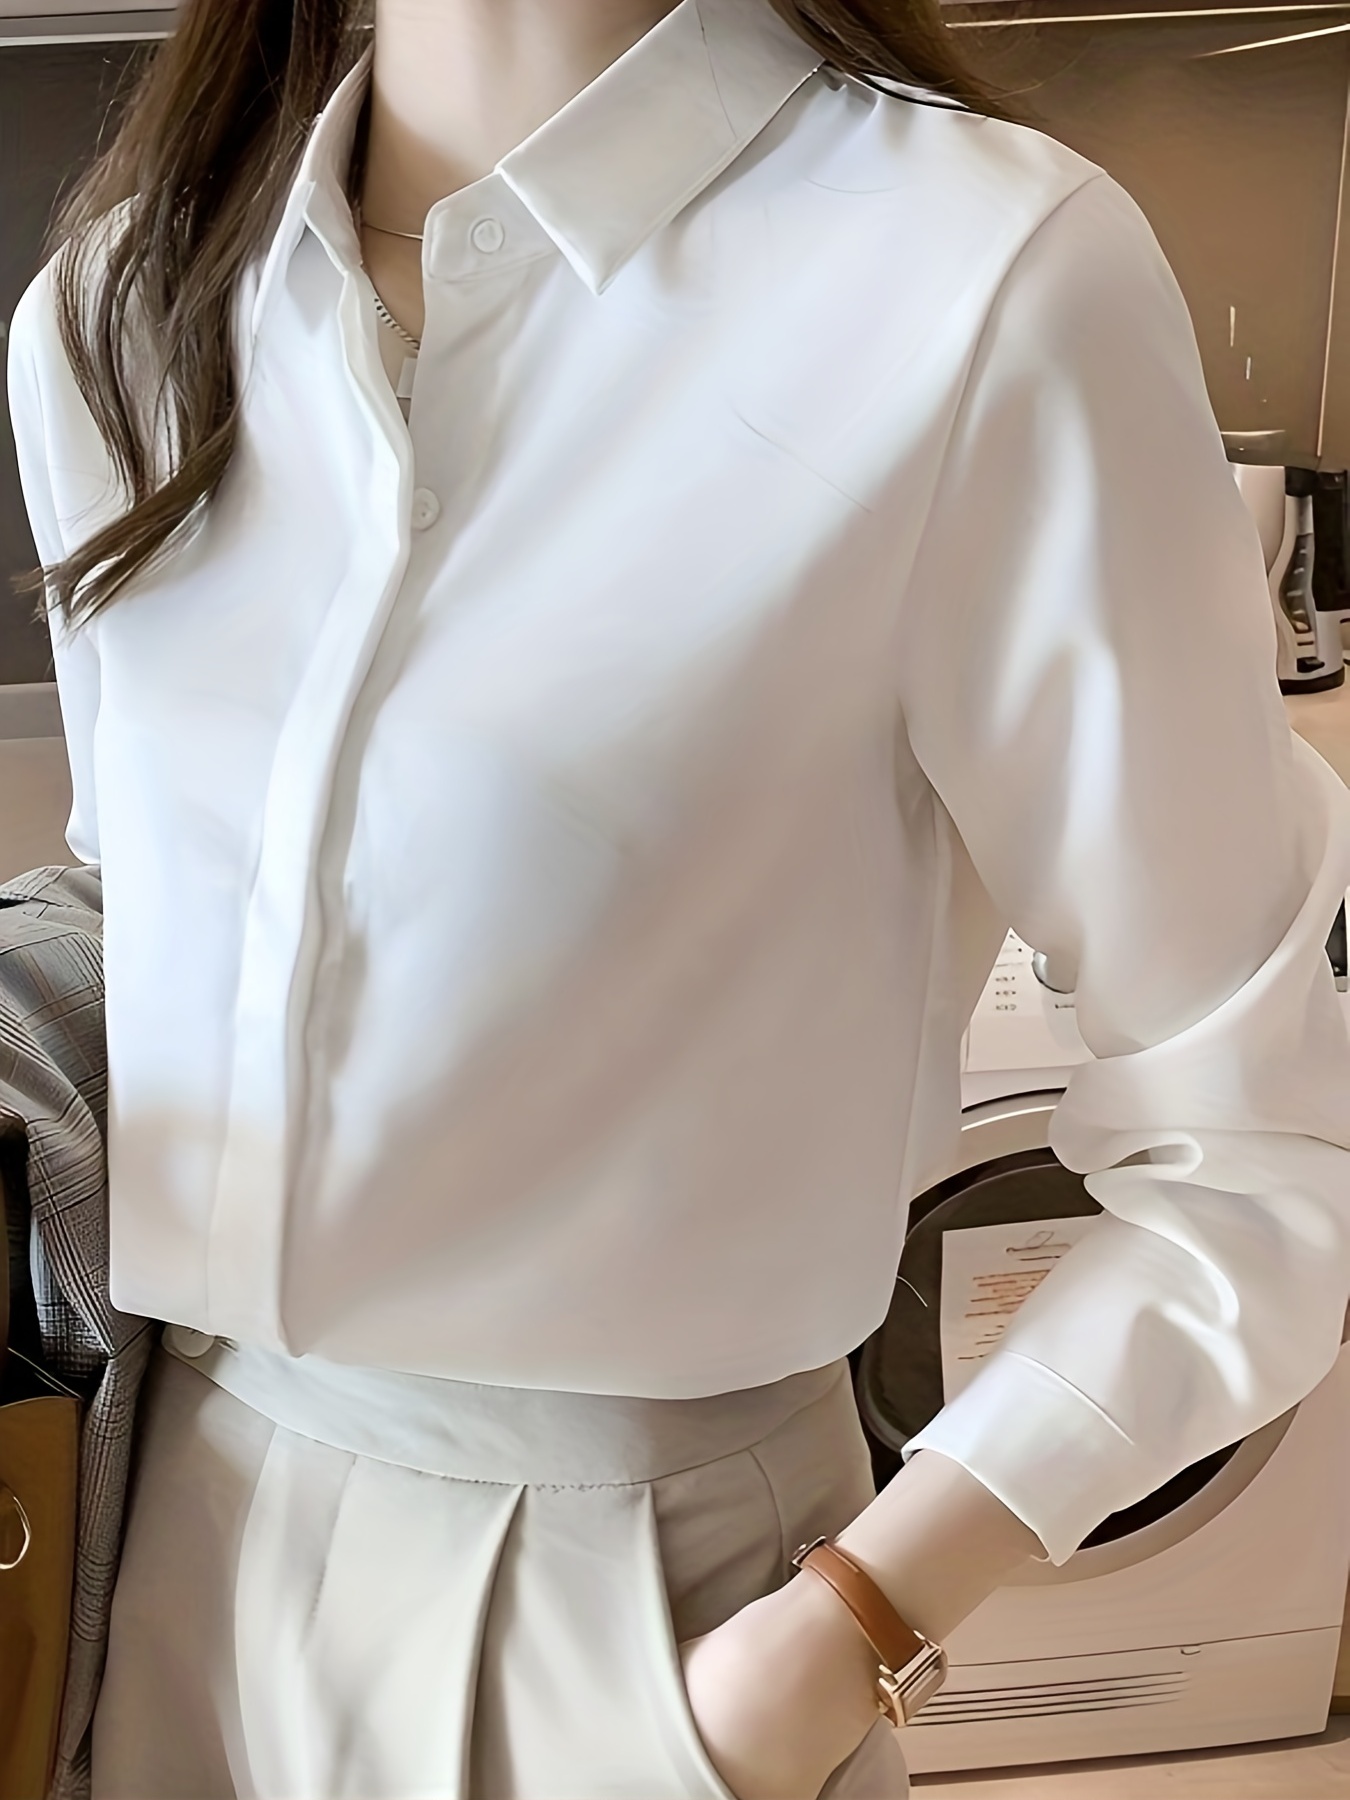 blouse Verraad risico ladies long white shirt Canada eer kanaal